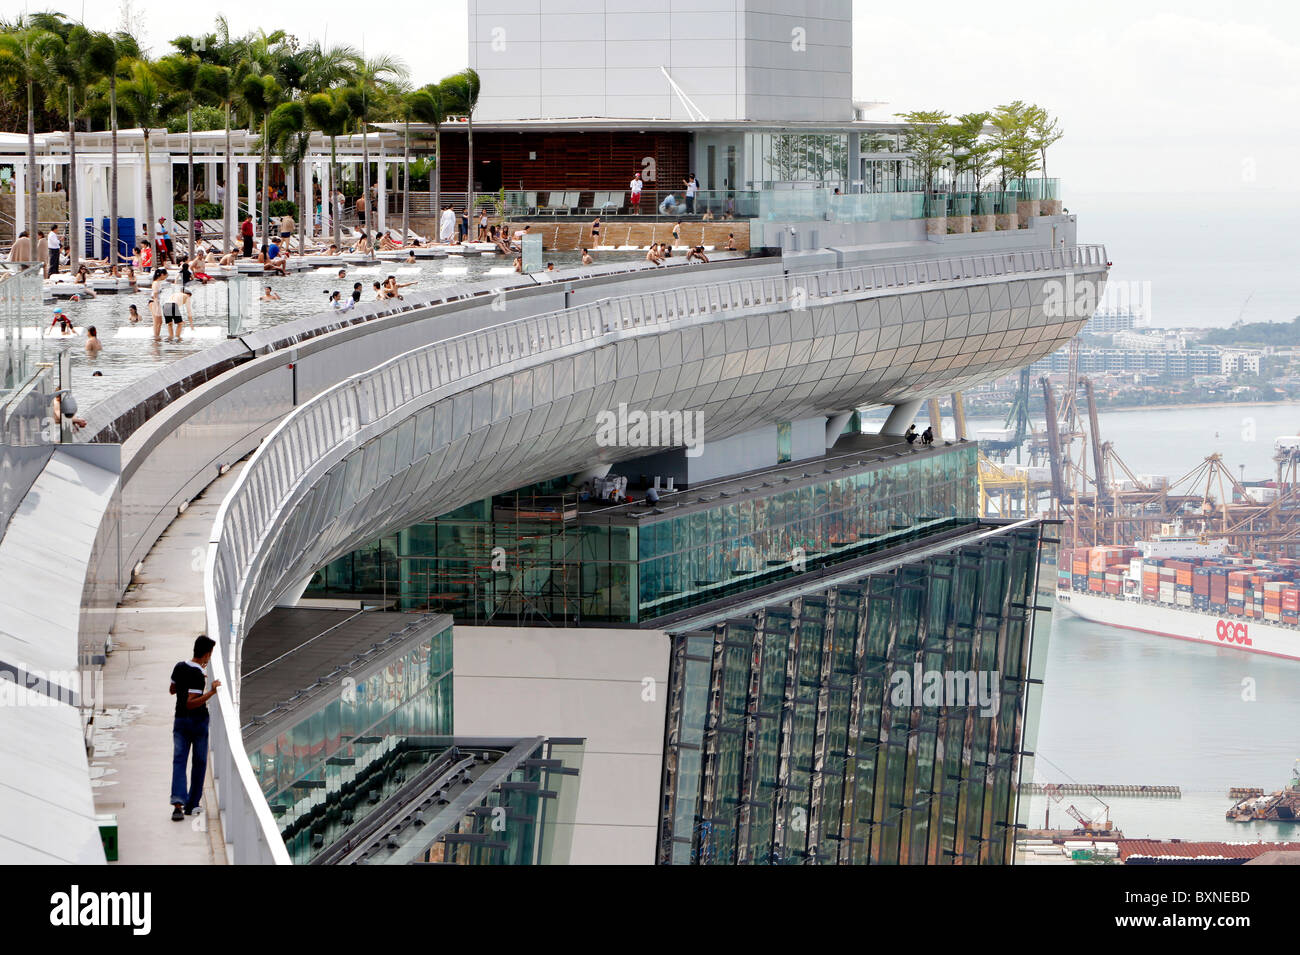 Le Marina Bay Sands Resort Hotel à Singapour. Piscine sur le dessus de l'hôtel Banque D'Images